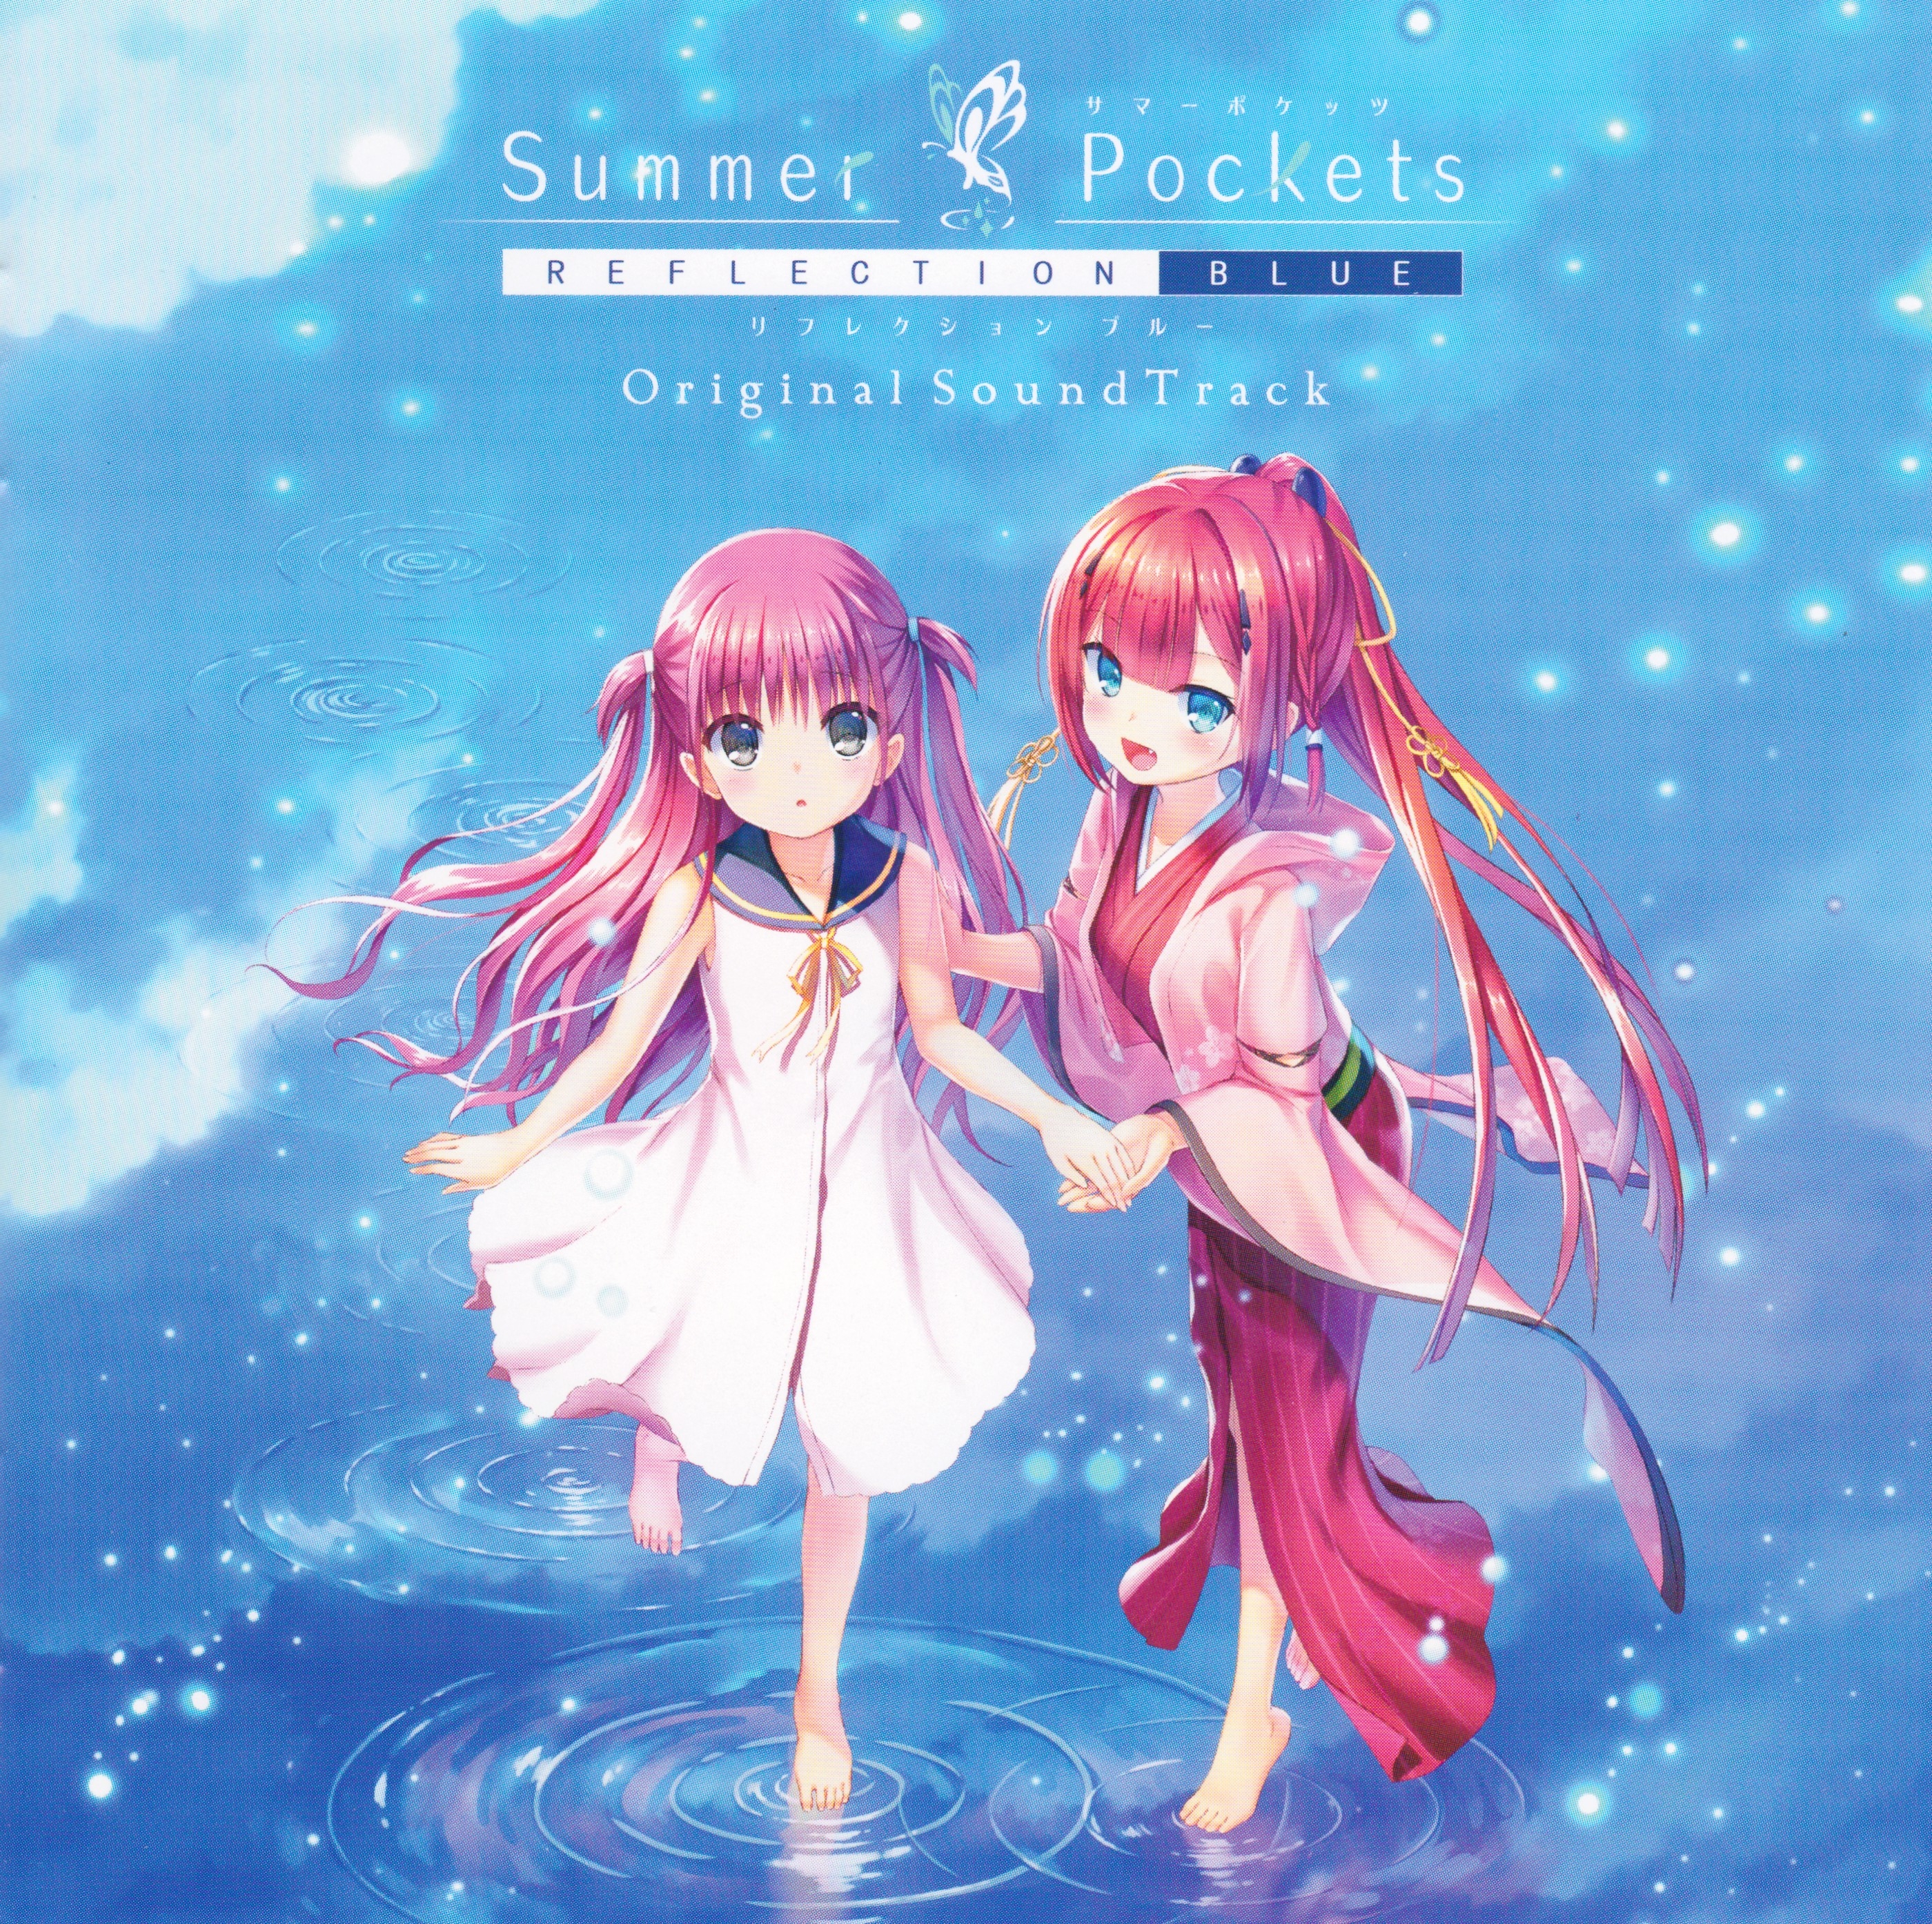 Summer Pockets REFLECTION BLUE Original SoundTrack (2020) MP3